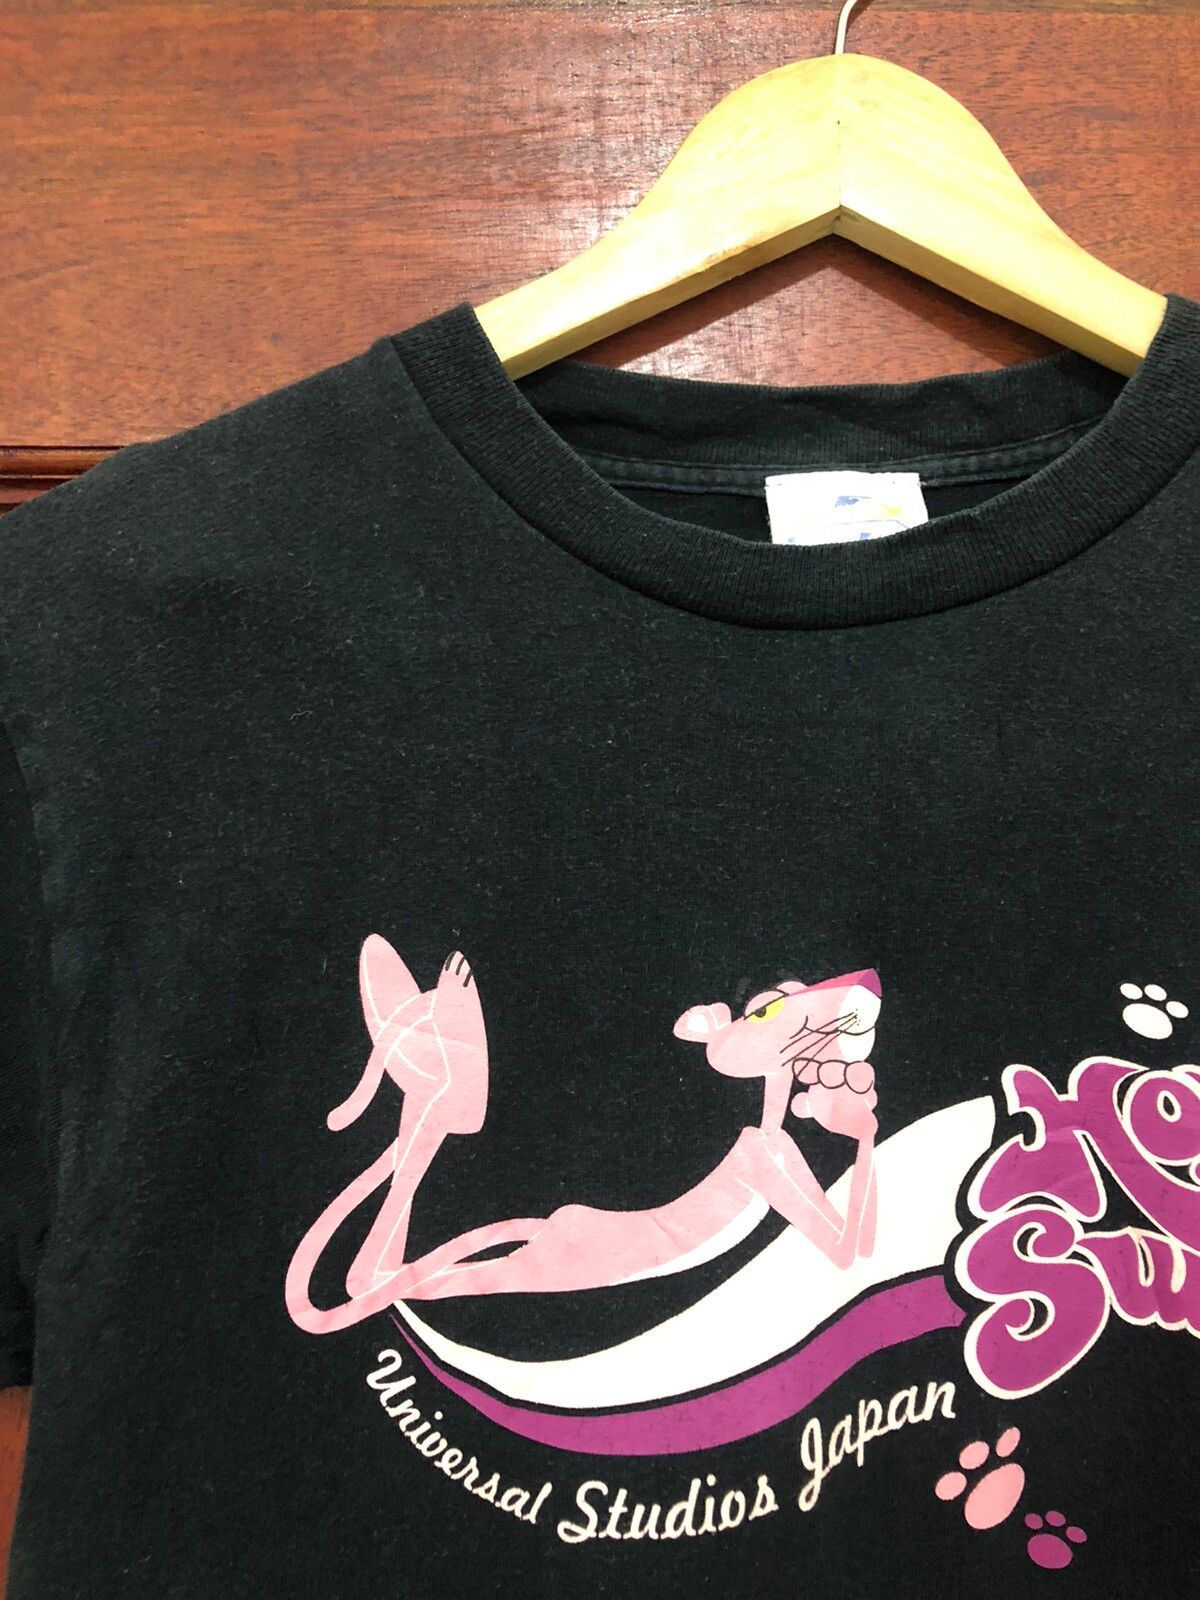 Japanese Brand Vintage Pink Panther Hot Sweet Japan Made TShirt Size US S / EU 44-46 / 1 - 4 Thumbnail